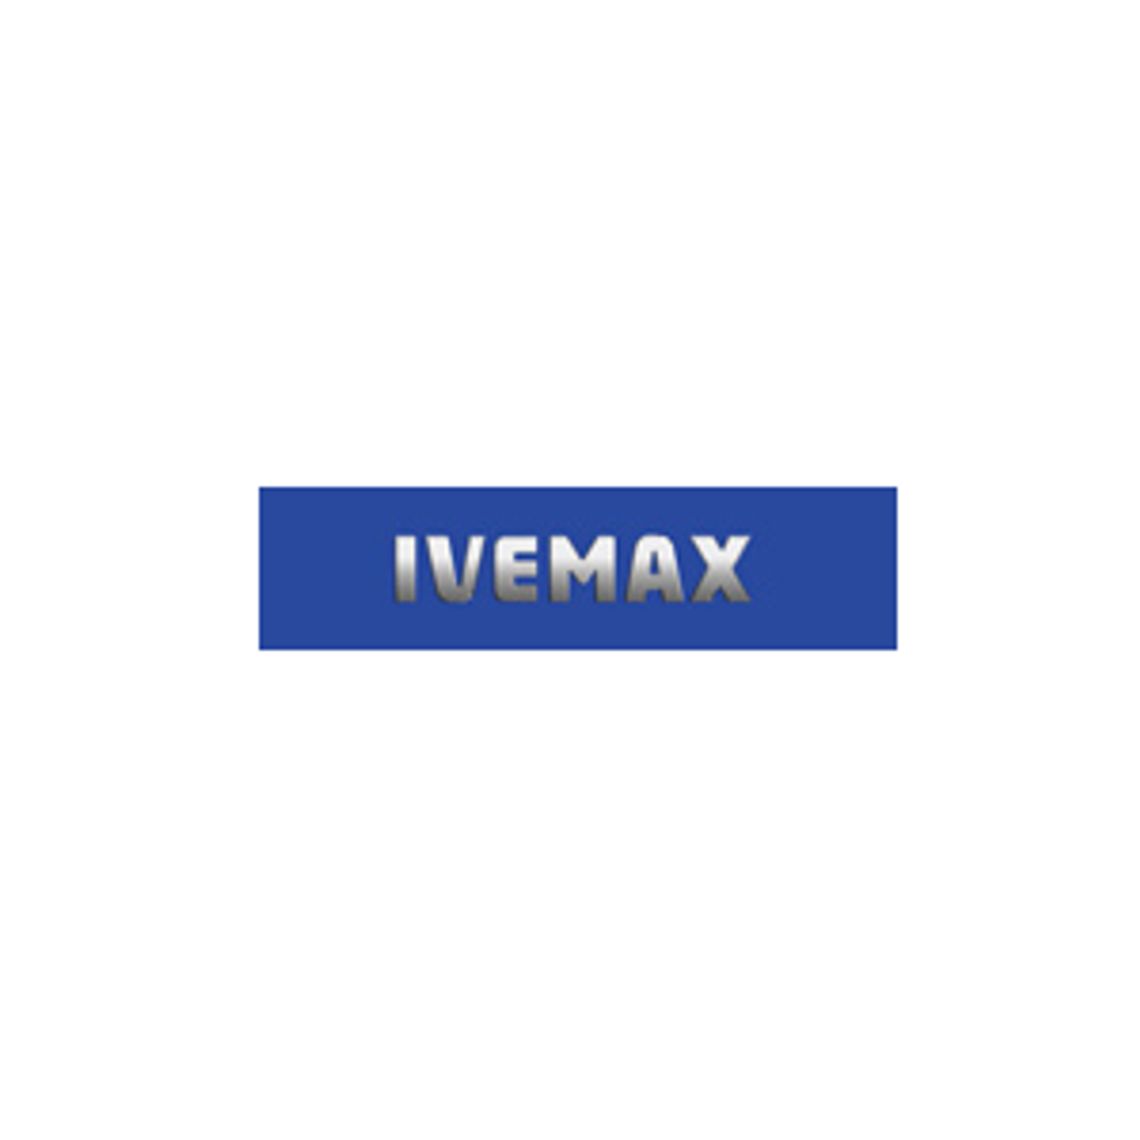 Przełącznik szyb - Ivemax